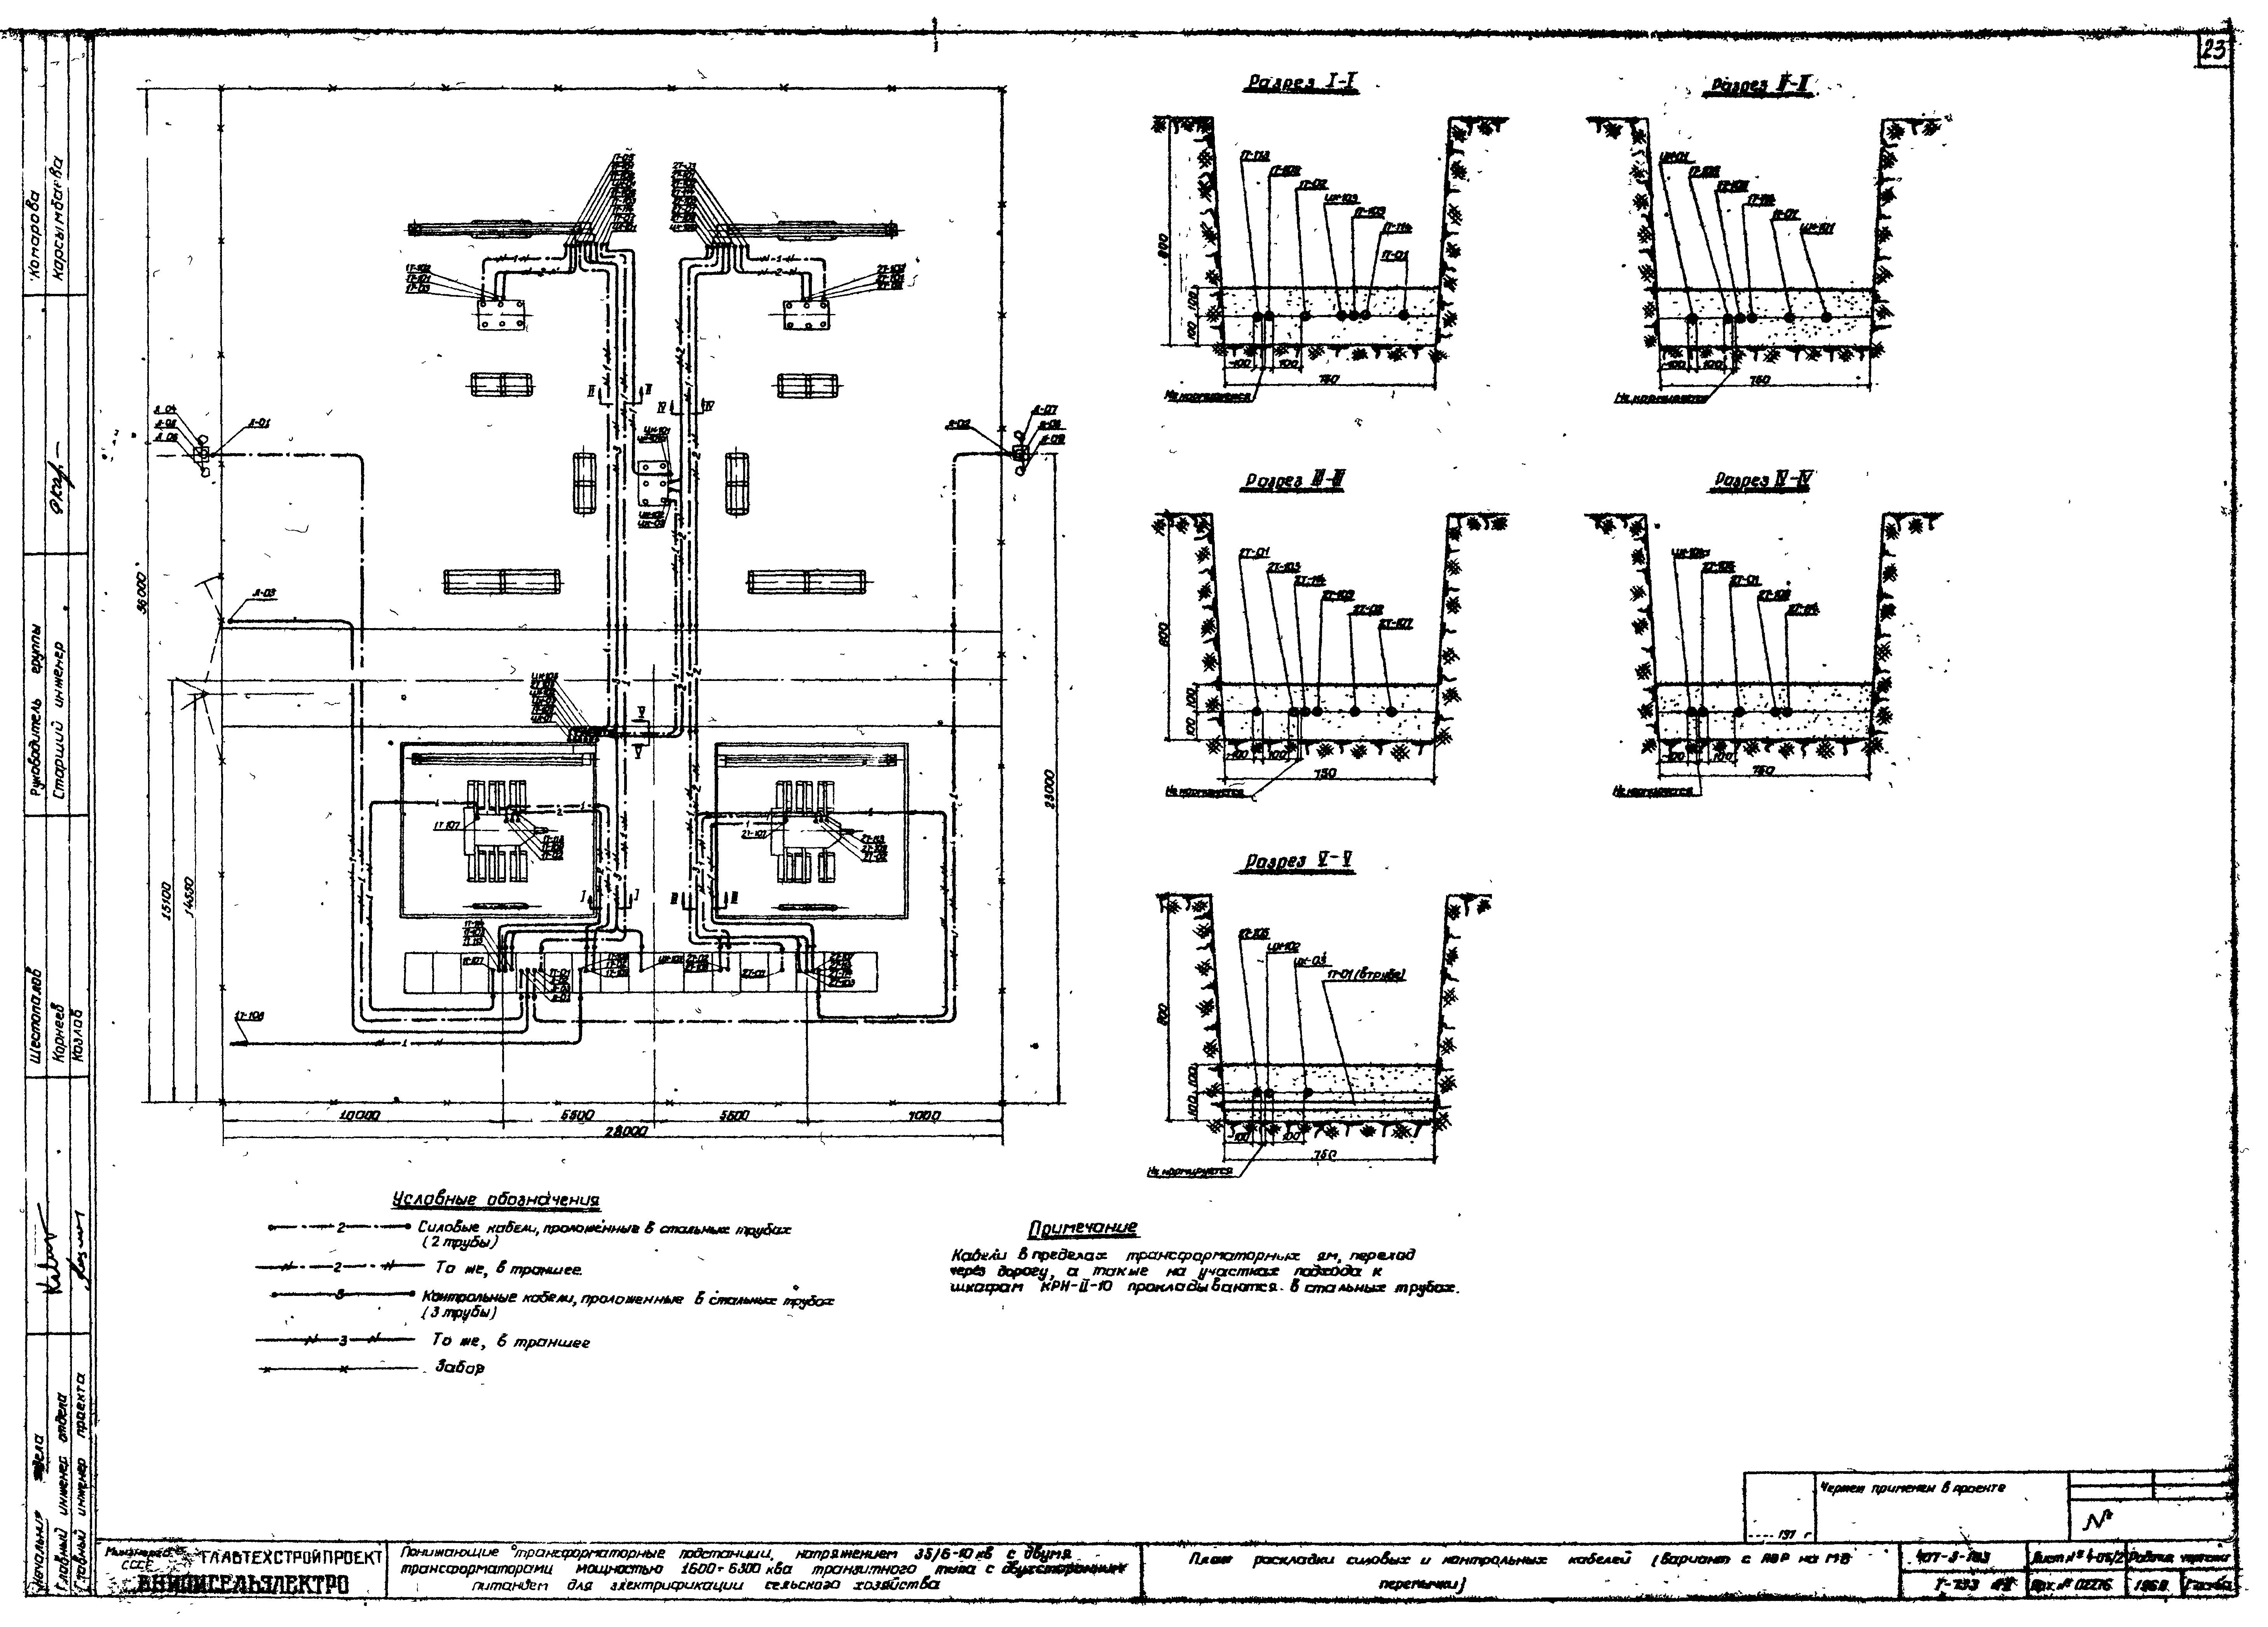 Типовой проект 407-3-103